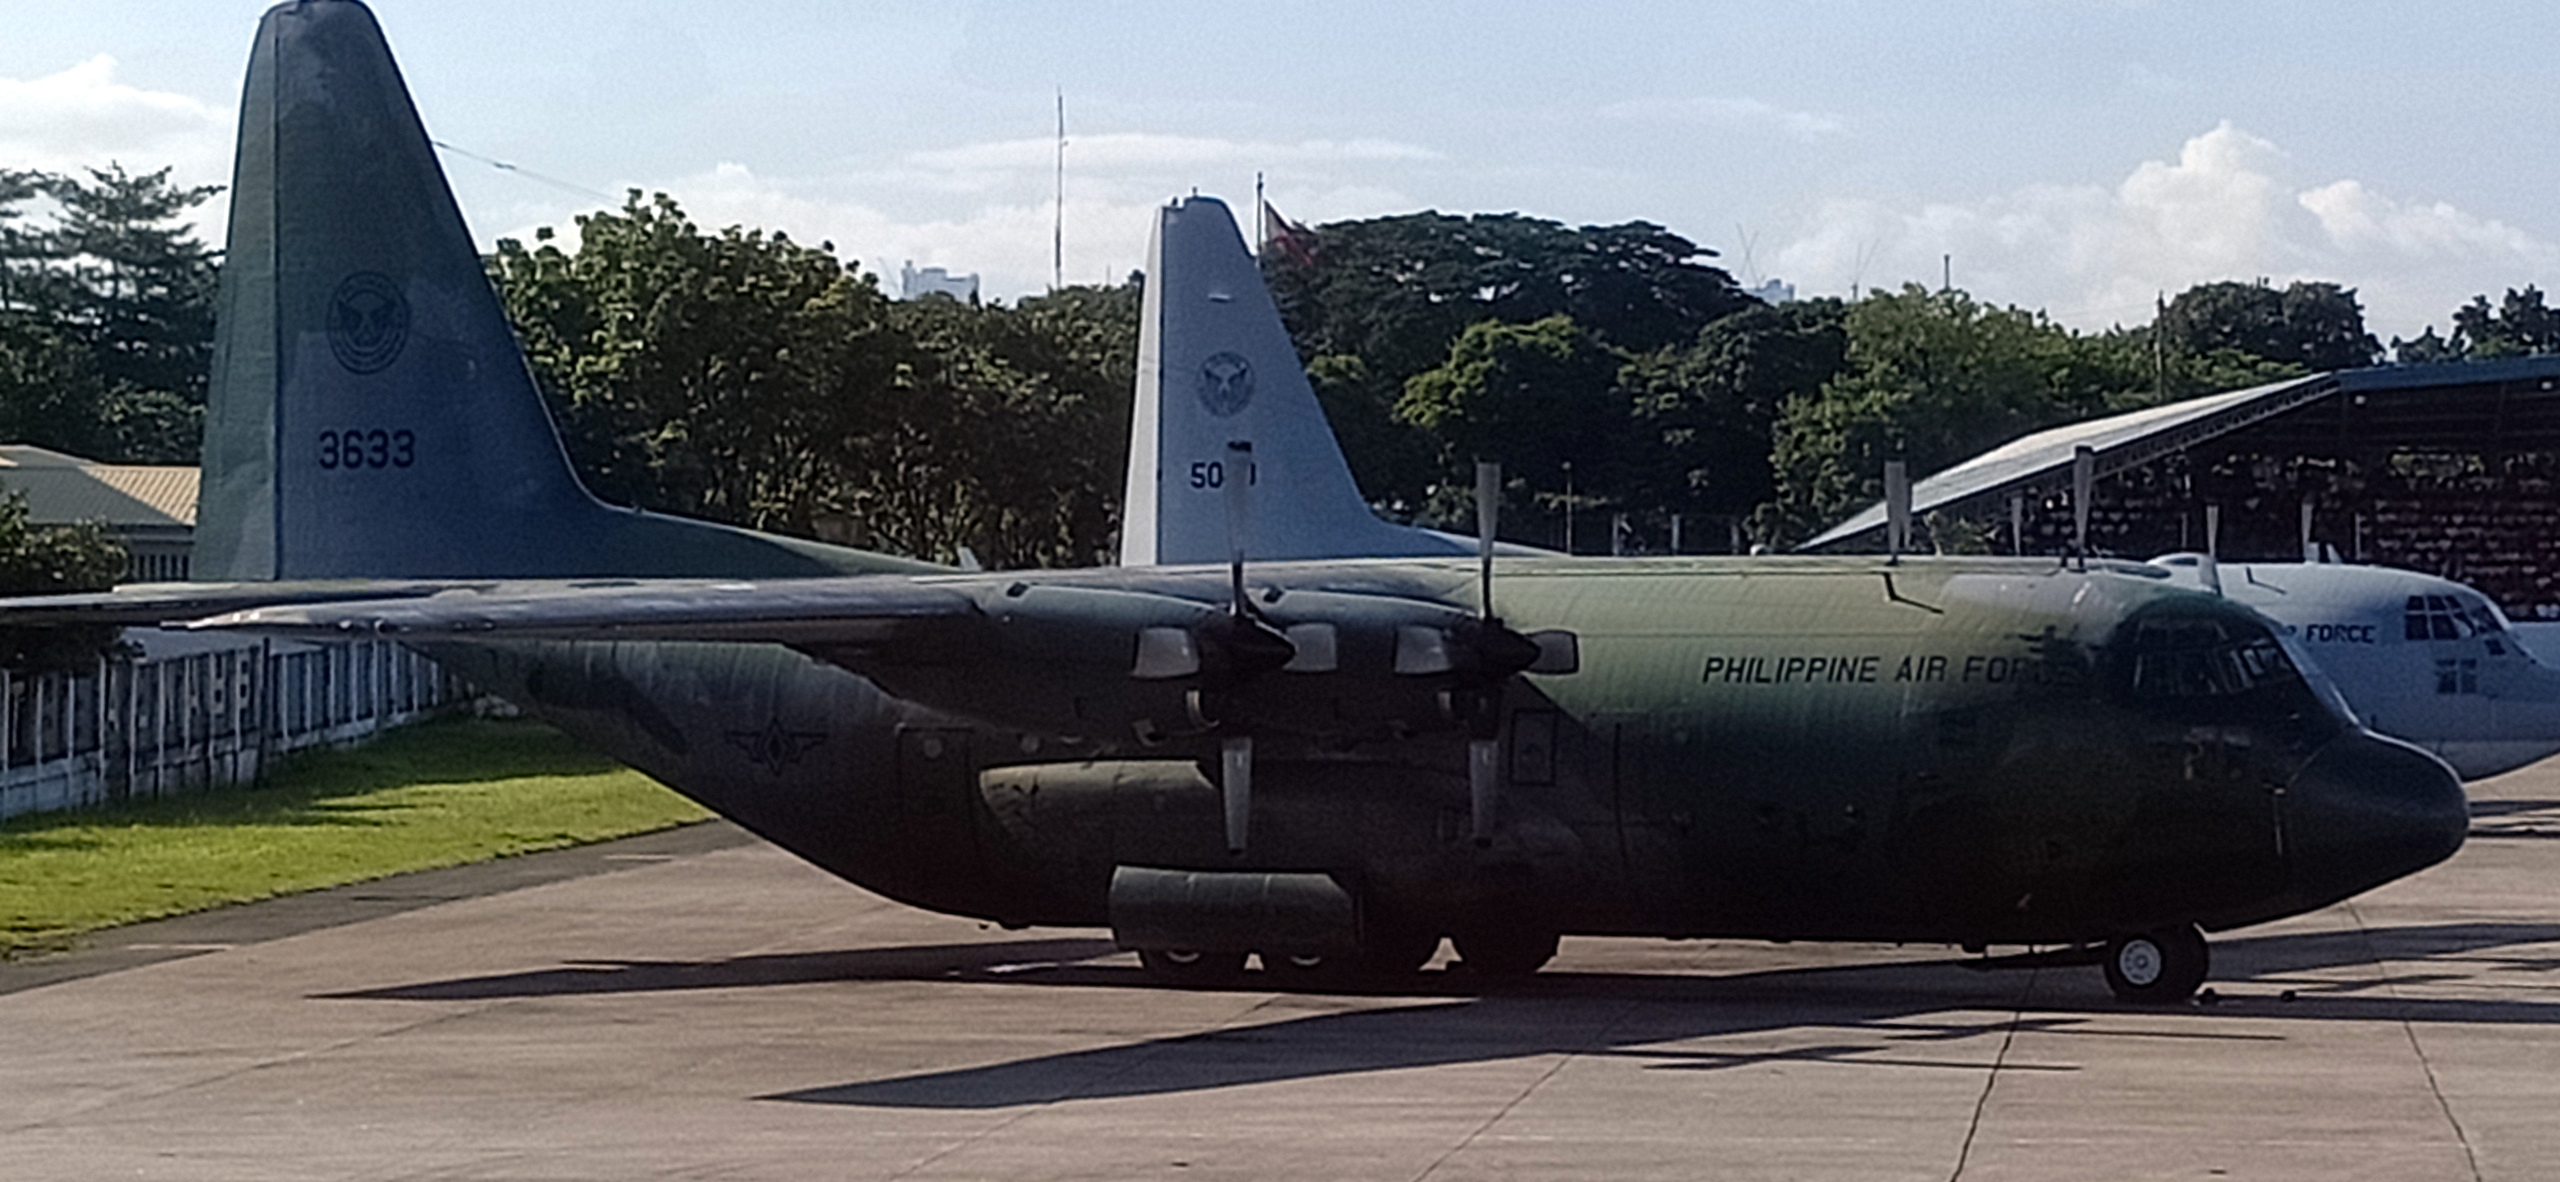 C 130 50. C130 самолет. Philippine Air Force c-130 Hercules. C130 kaf328. Philippine Air Force.